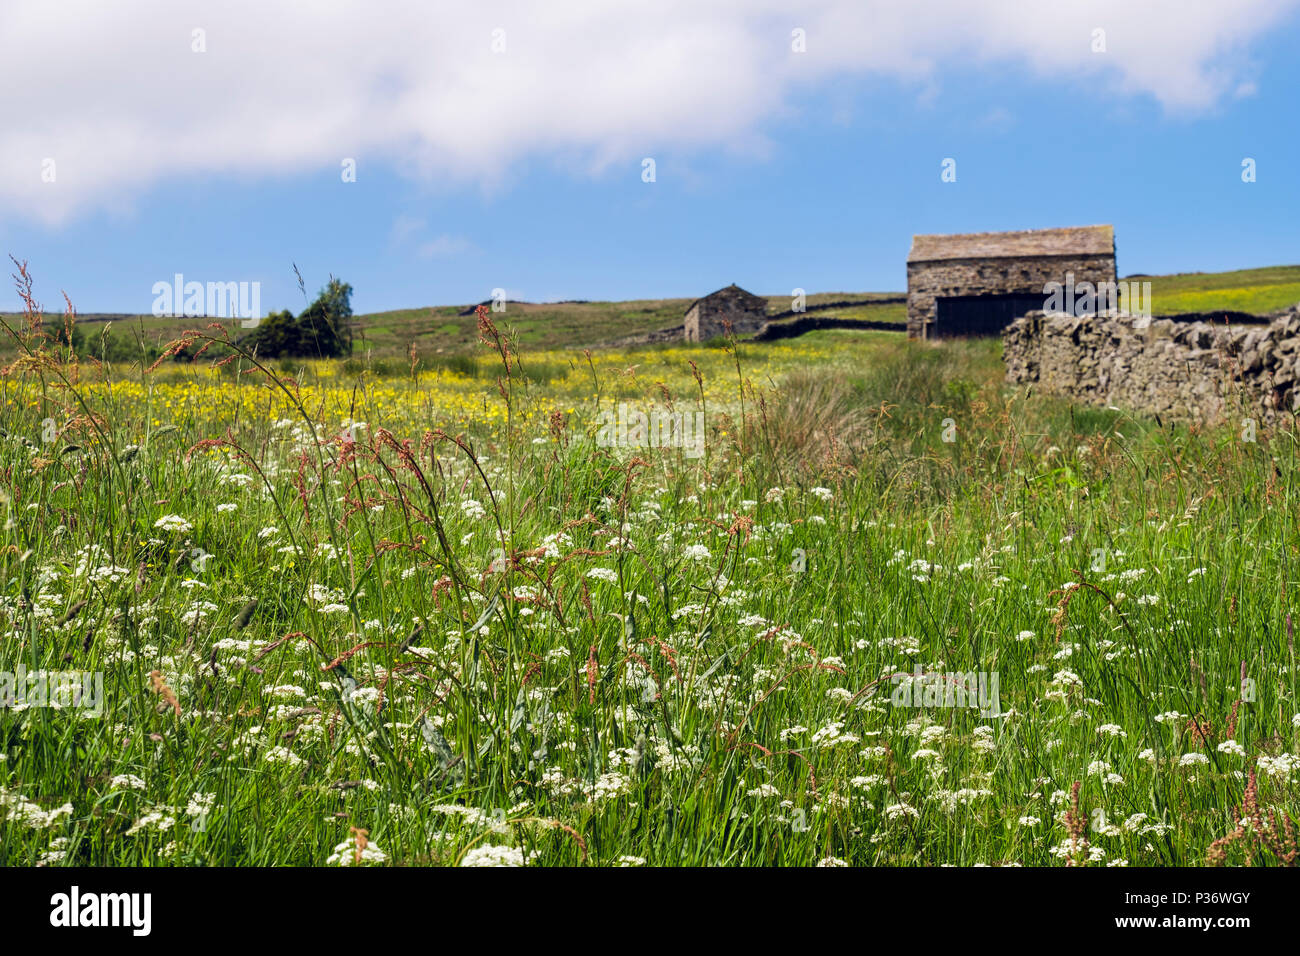 Verano escena campestre con heno wildflower meadow y antiguos graneros en campo. Upper Swaledale Yorkshire Dales National Park North Yorkshire, Inglaterra Foto de stock